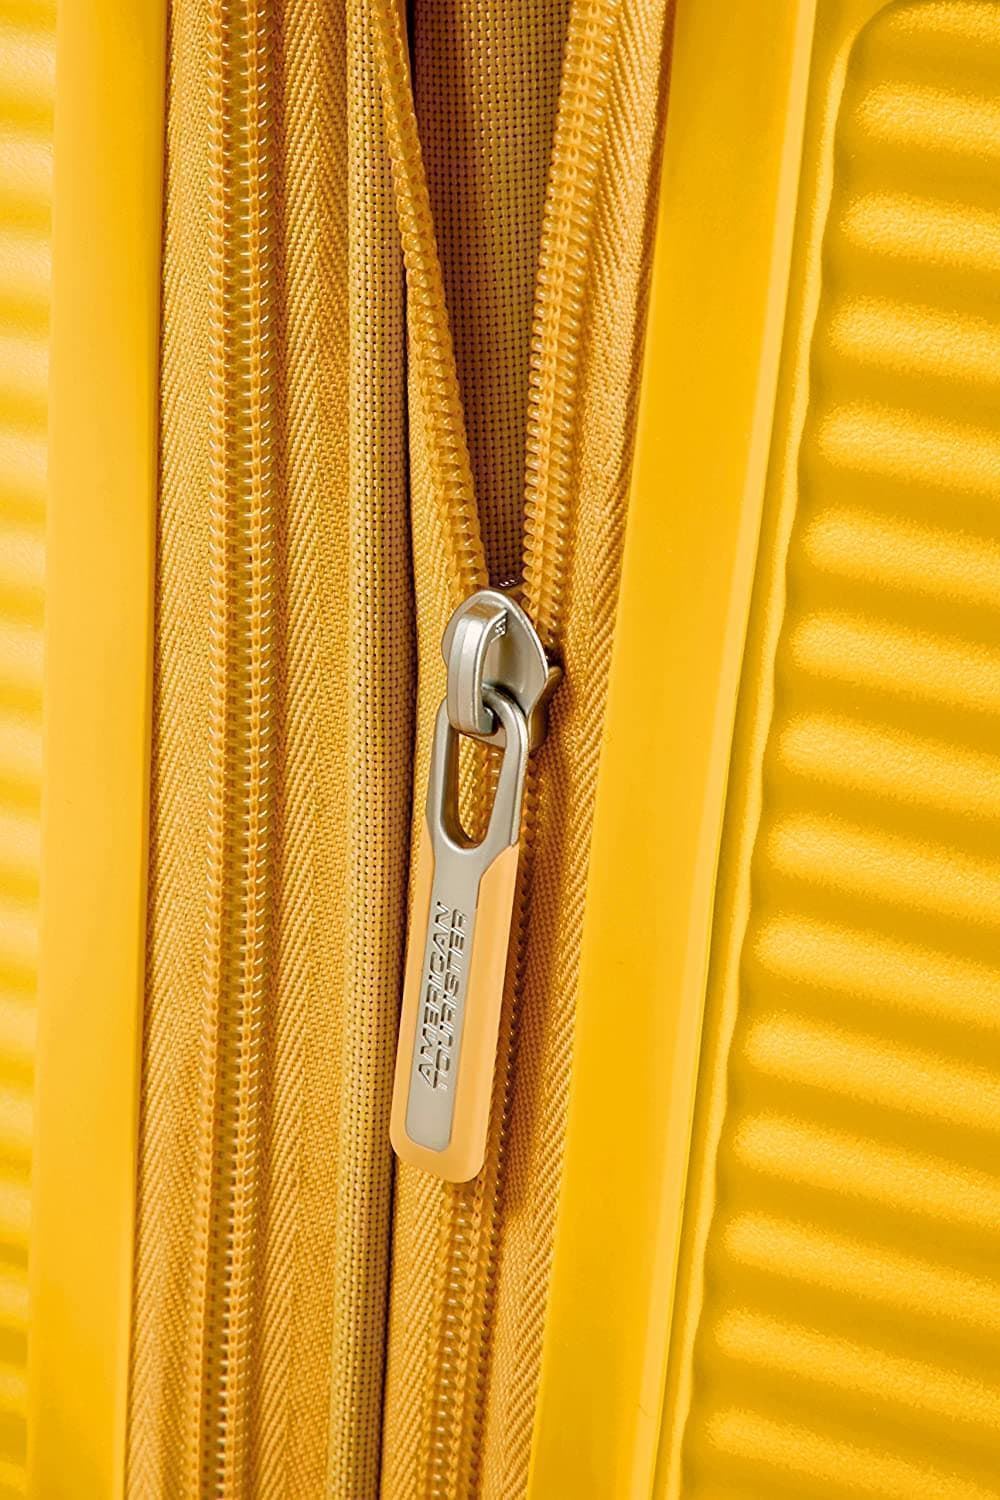 American Tourister Soundbox maleta cabina expandible Amarillo 3 años de garantia - Imagen 7